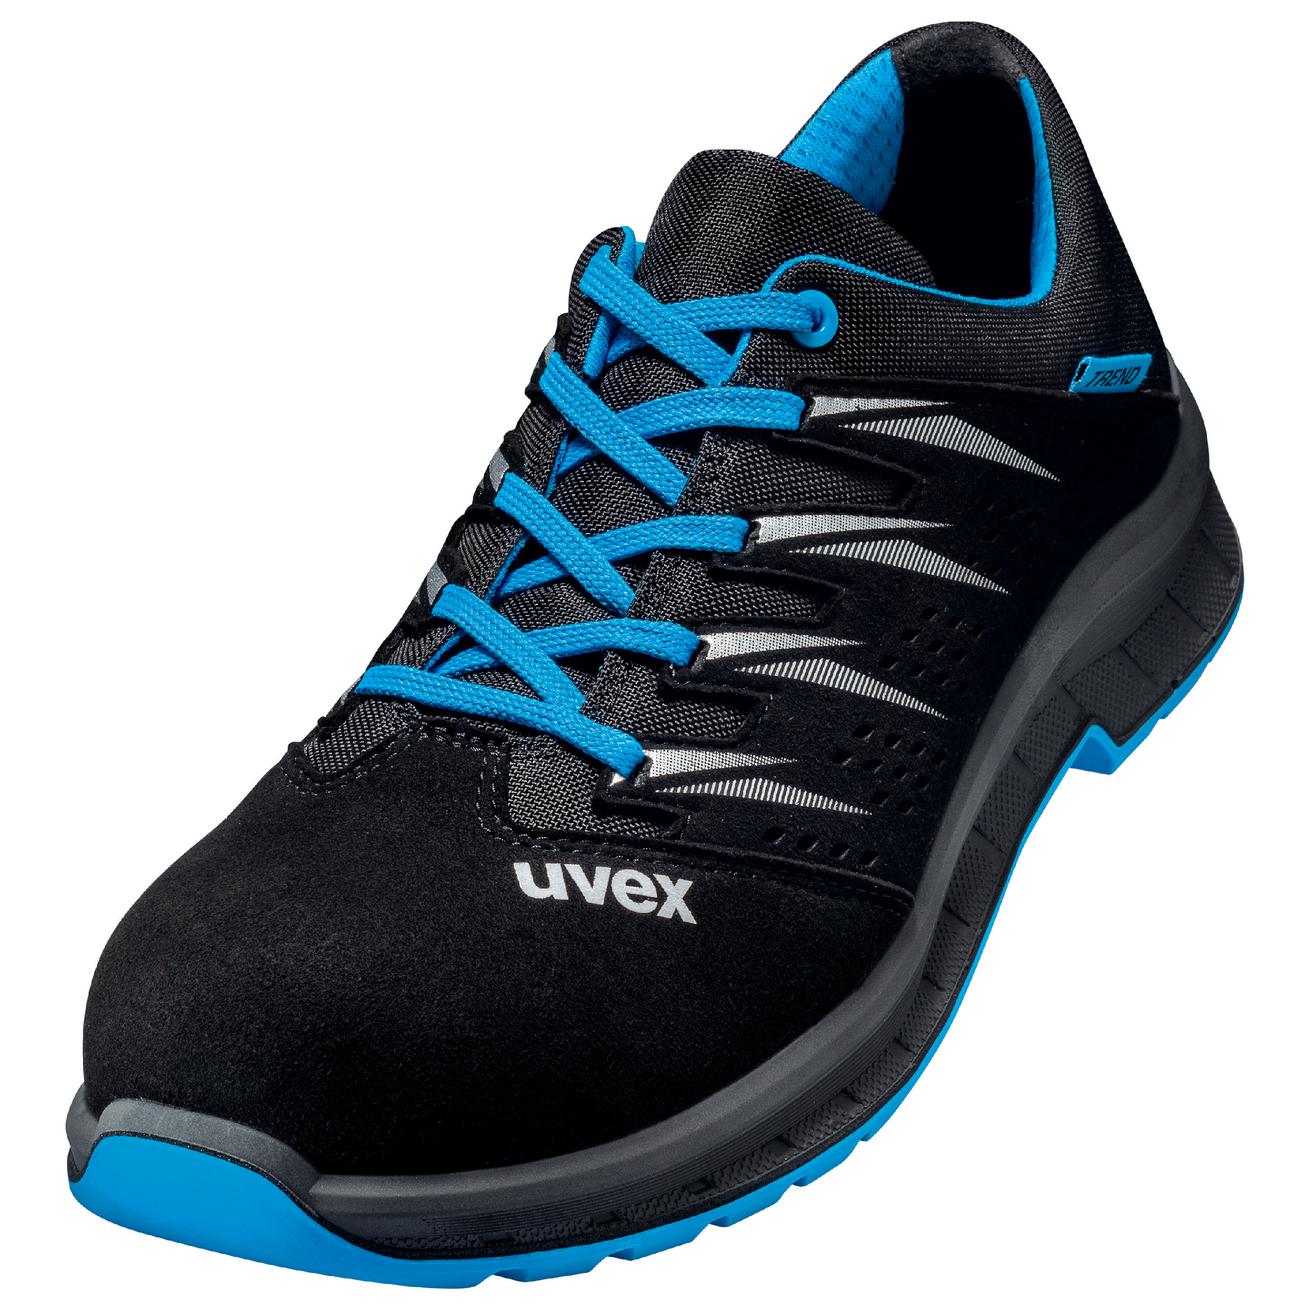 Perf. polobotka obuv uvex 2 trend, šíře 11, S1 SRC, černá/modrá 6937 Velikost: 50, Kód produktu: 6937850